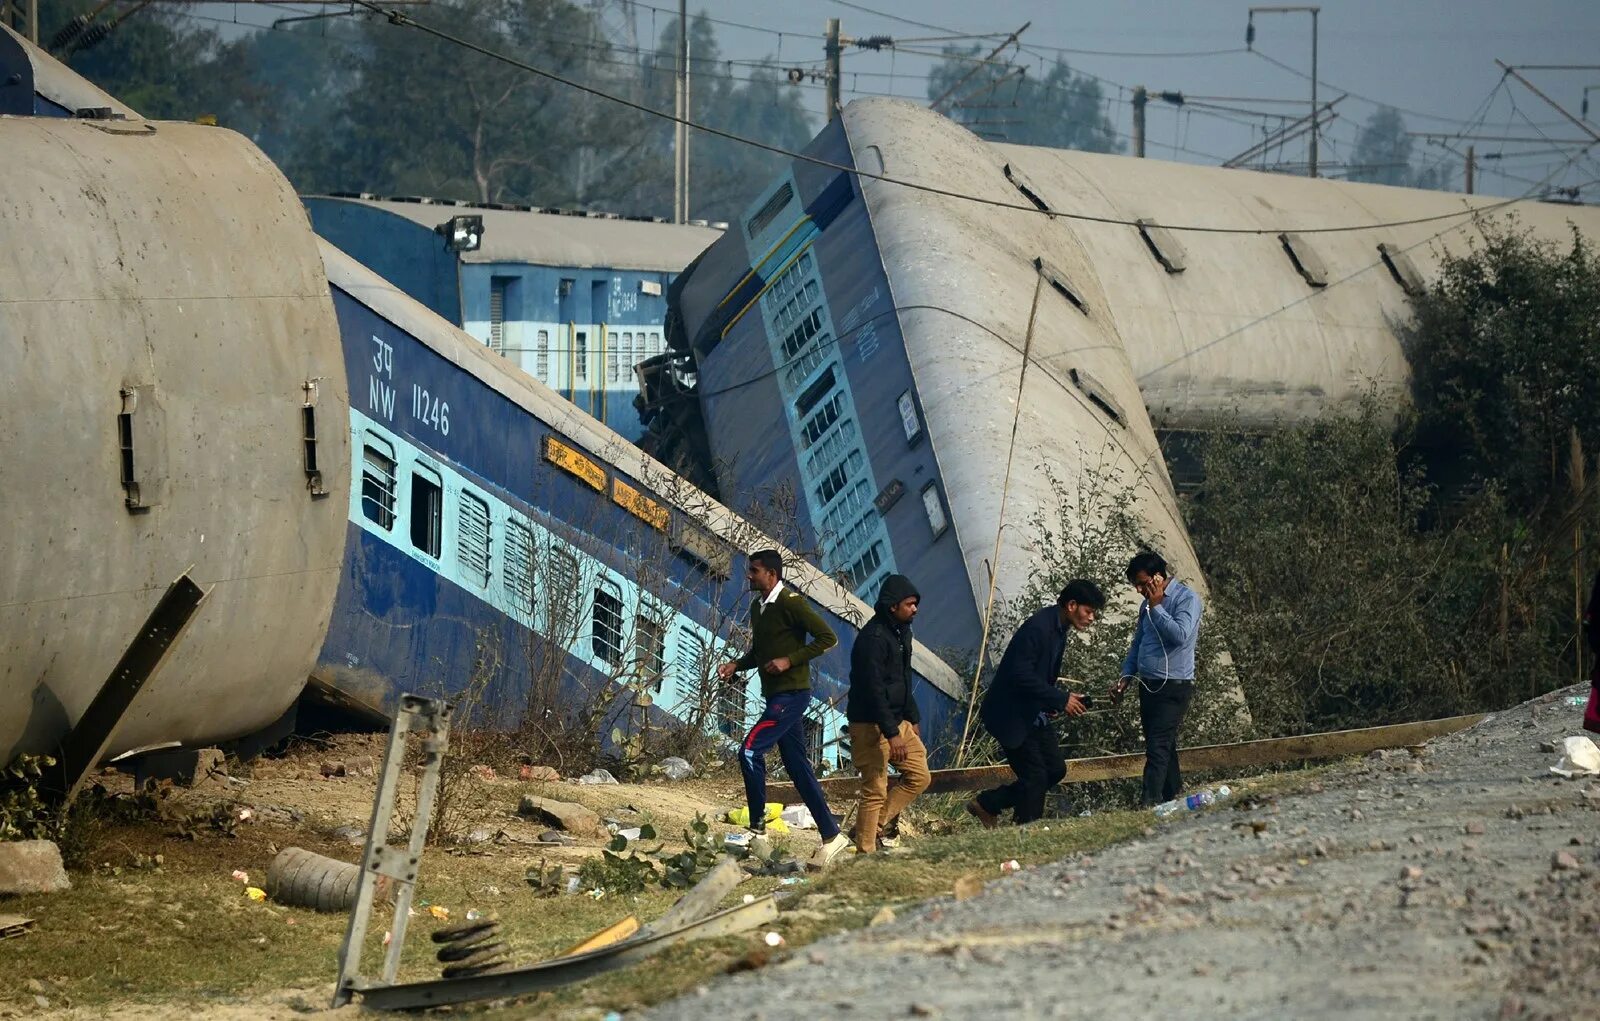 28 декабря 2013 г 426. ЖД катастрофа в Индии 1981 год. Крушение поезда в штате Бихар. Железнодорожная катастрофа в Бихаре (Bihar) – Индия, 1981 год. Крушение в индийской Бихаре.